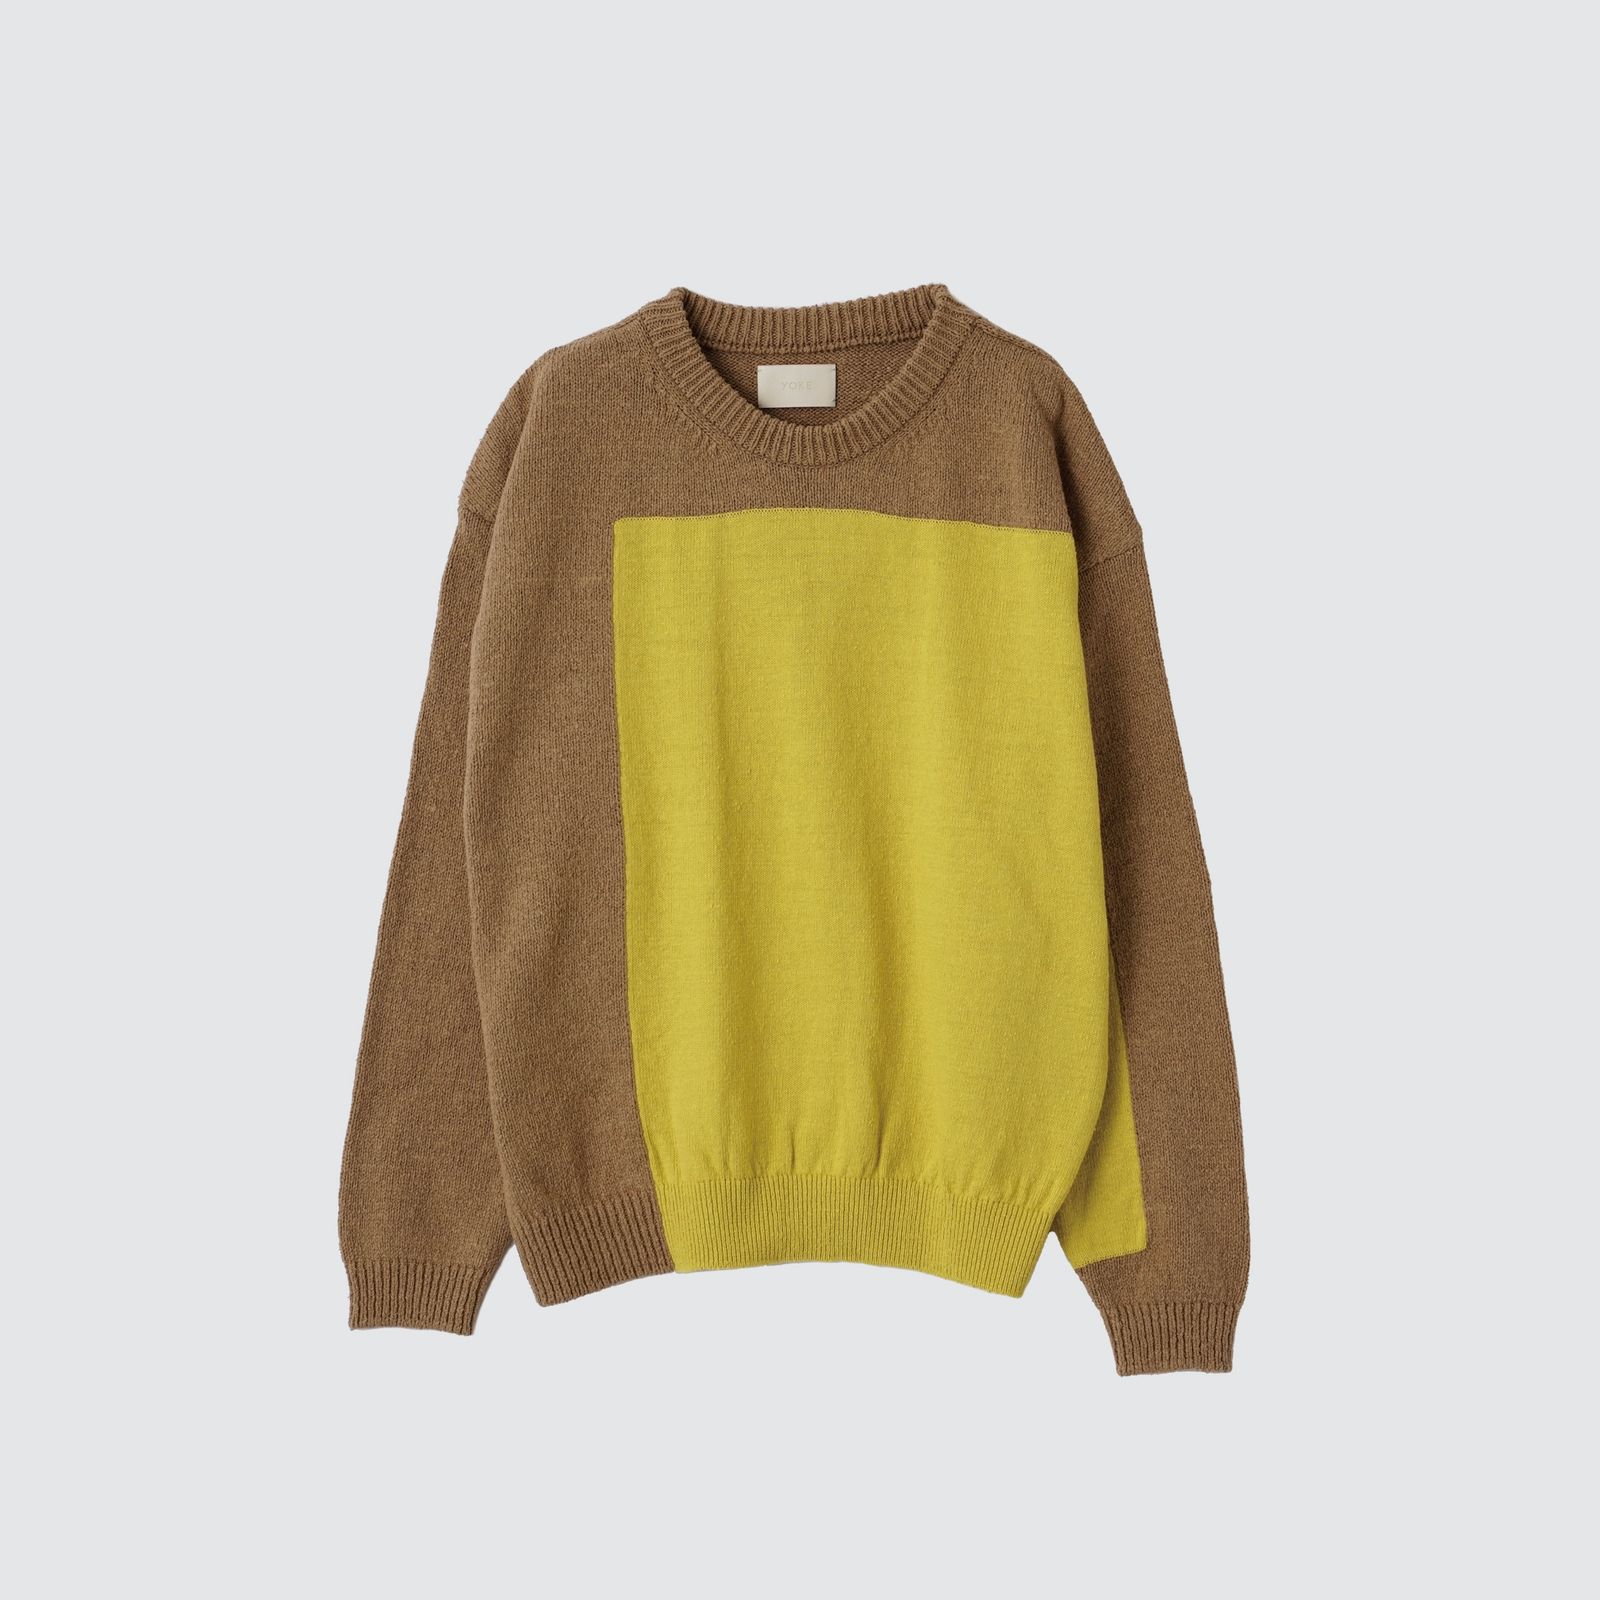 YOKE - 【残りわずか】Intarsia Crewneck Sweater | ACRMTSM ONLINE STORE